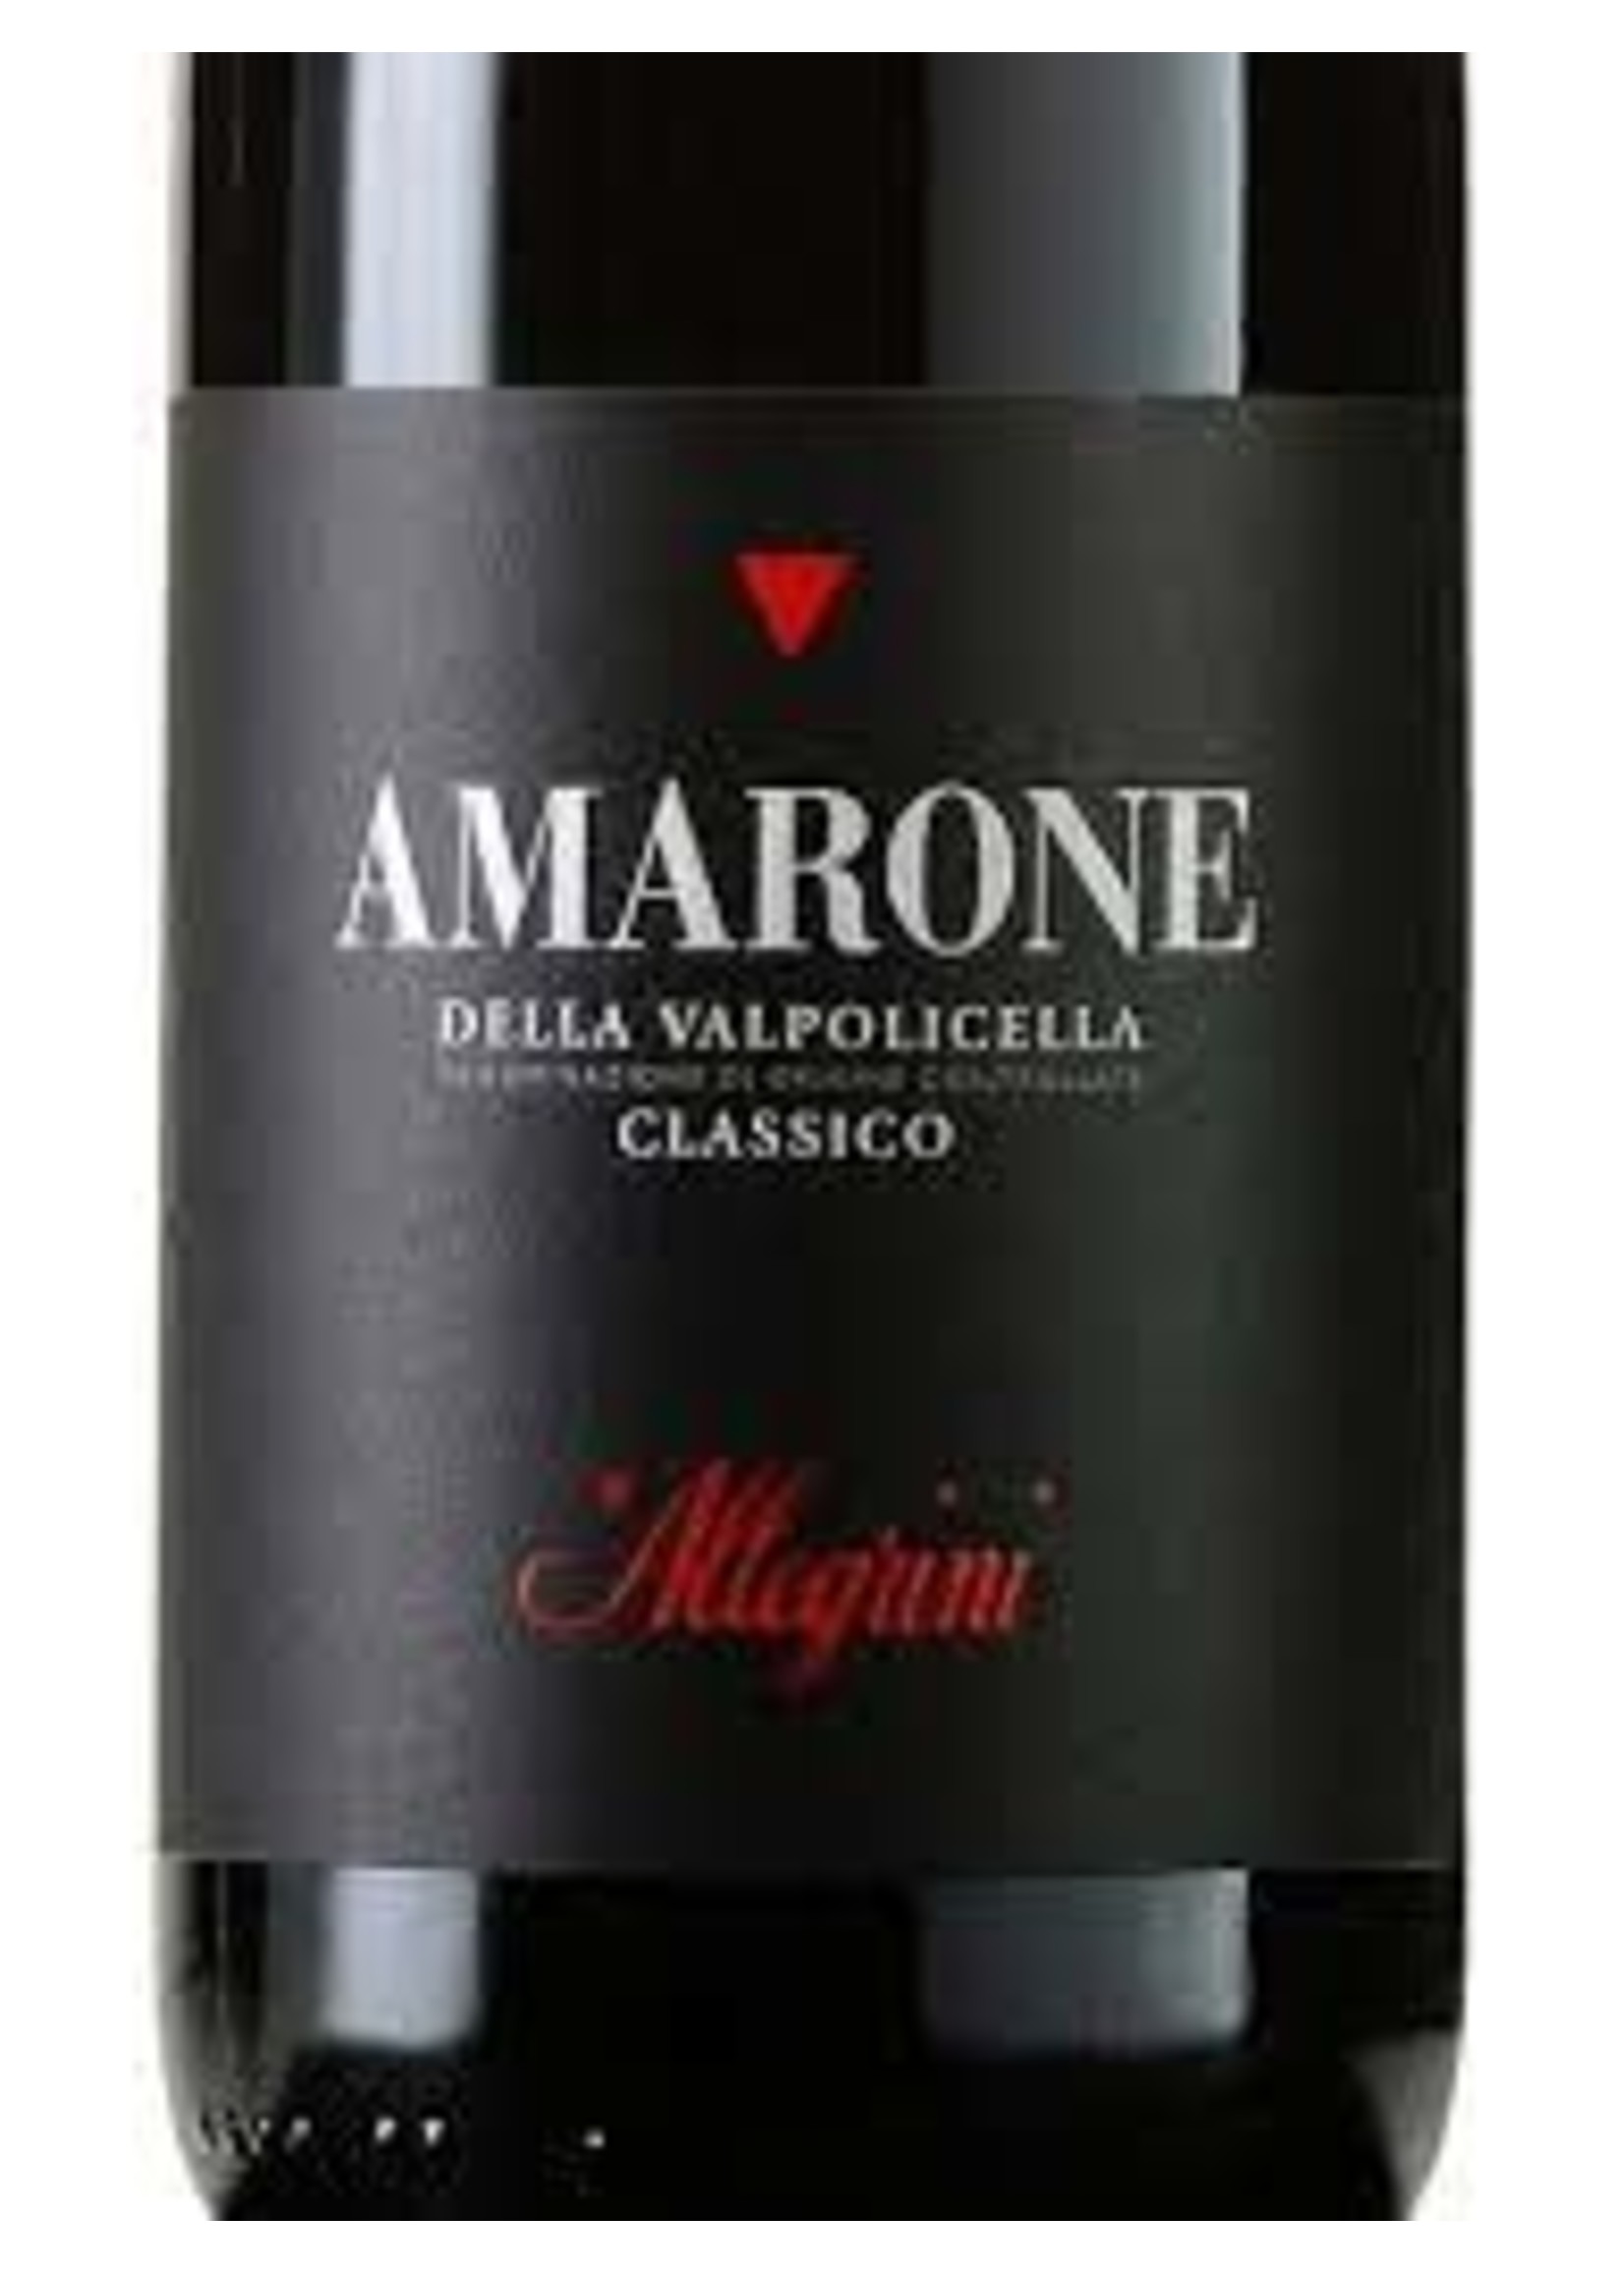 Allegrini 2018 Amarone della Valpolicella Classico 750ml